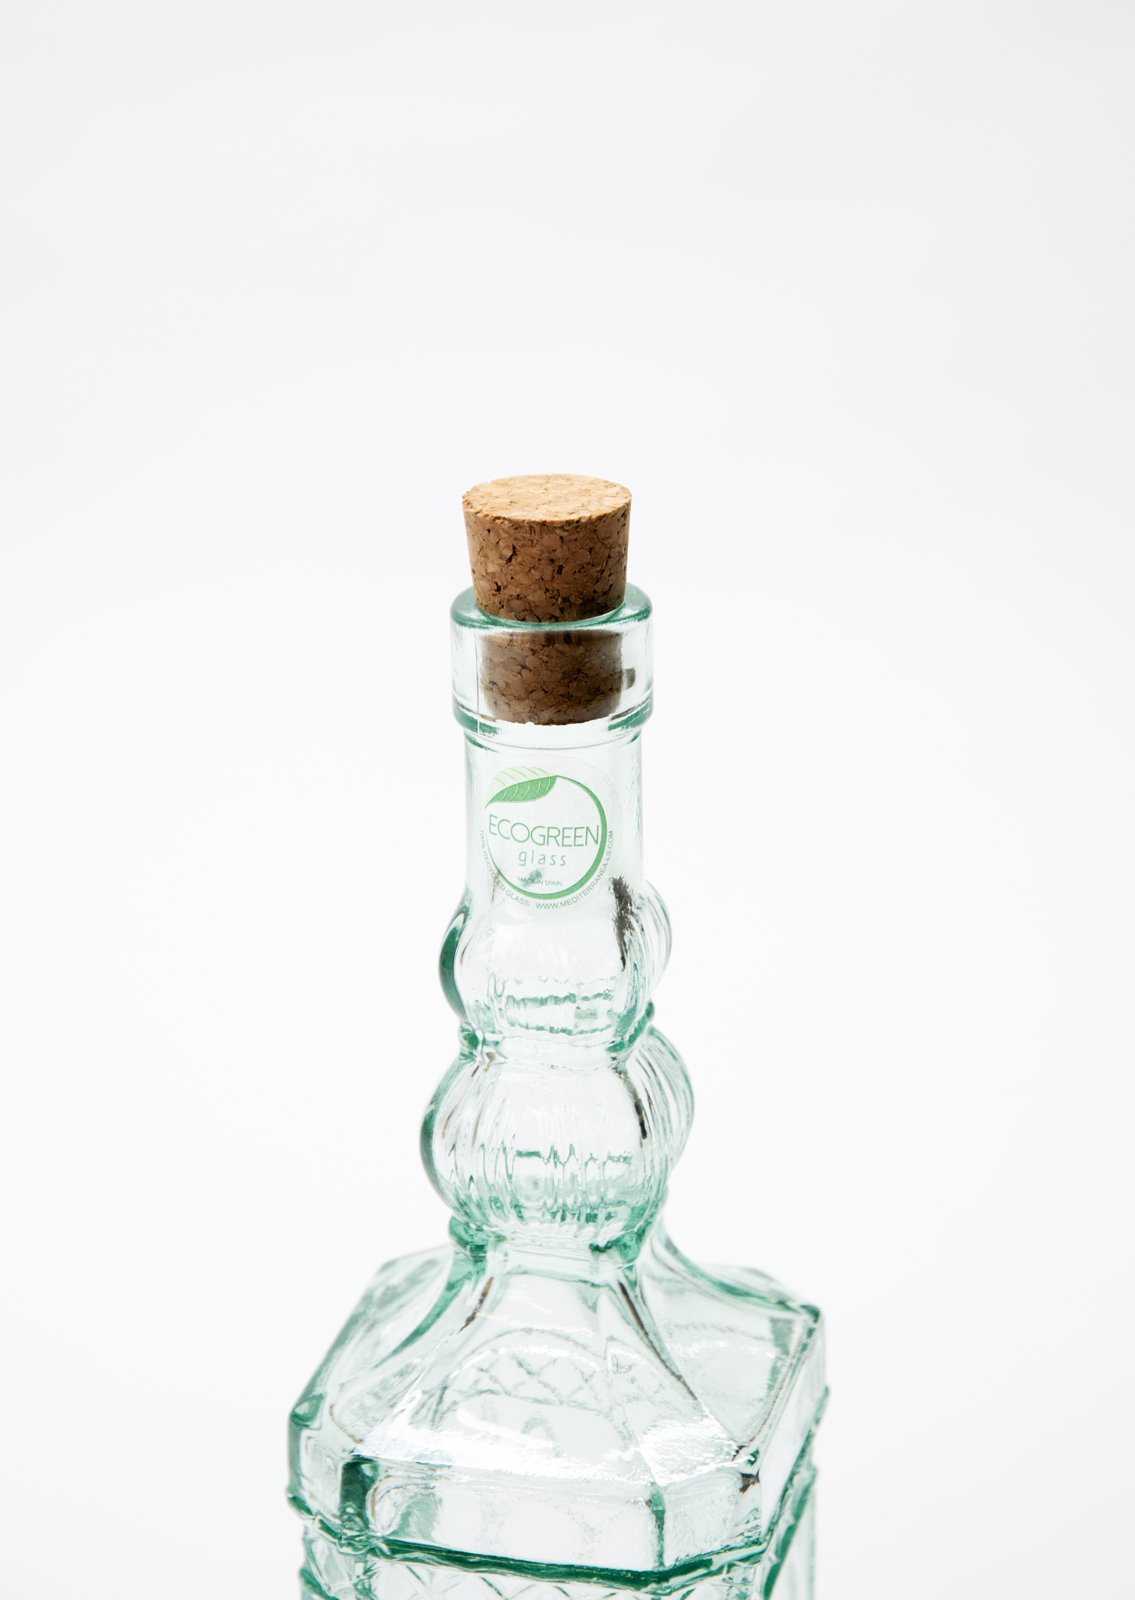 Ecogreen Flasche 500ml mit Kork Verschluss Decor